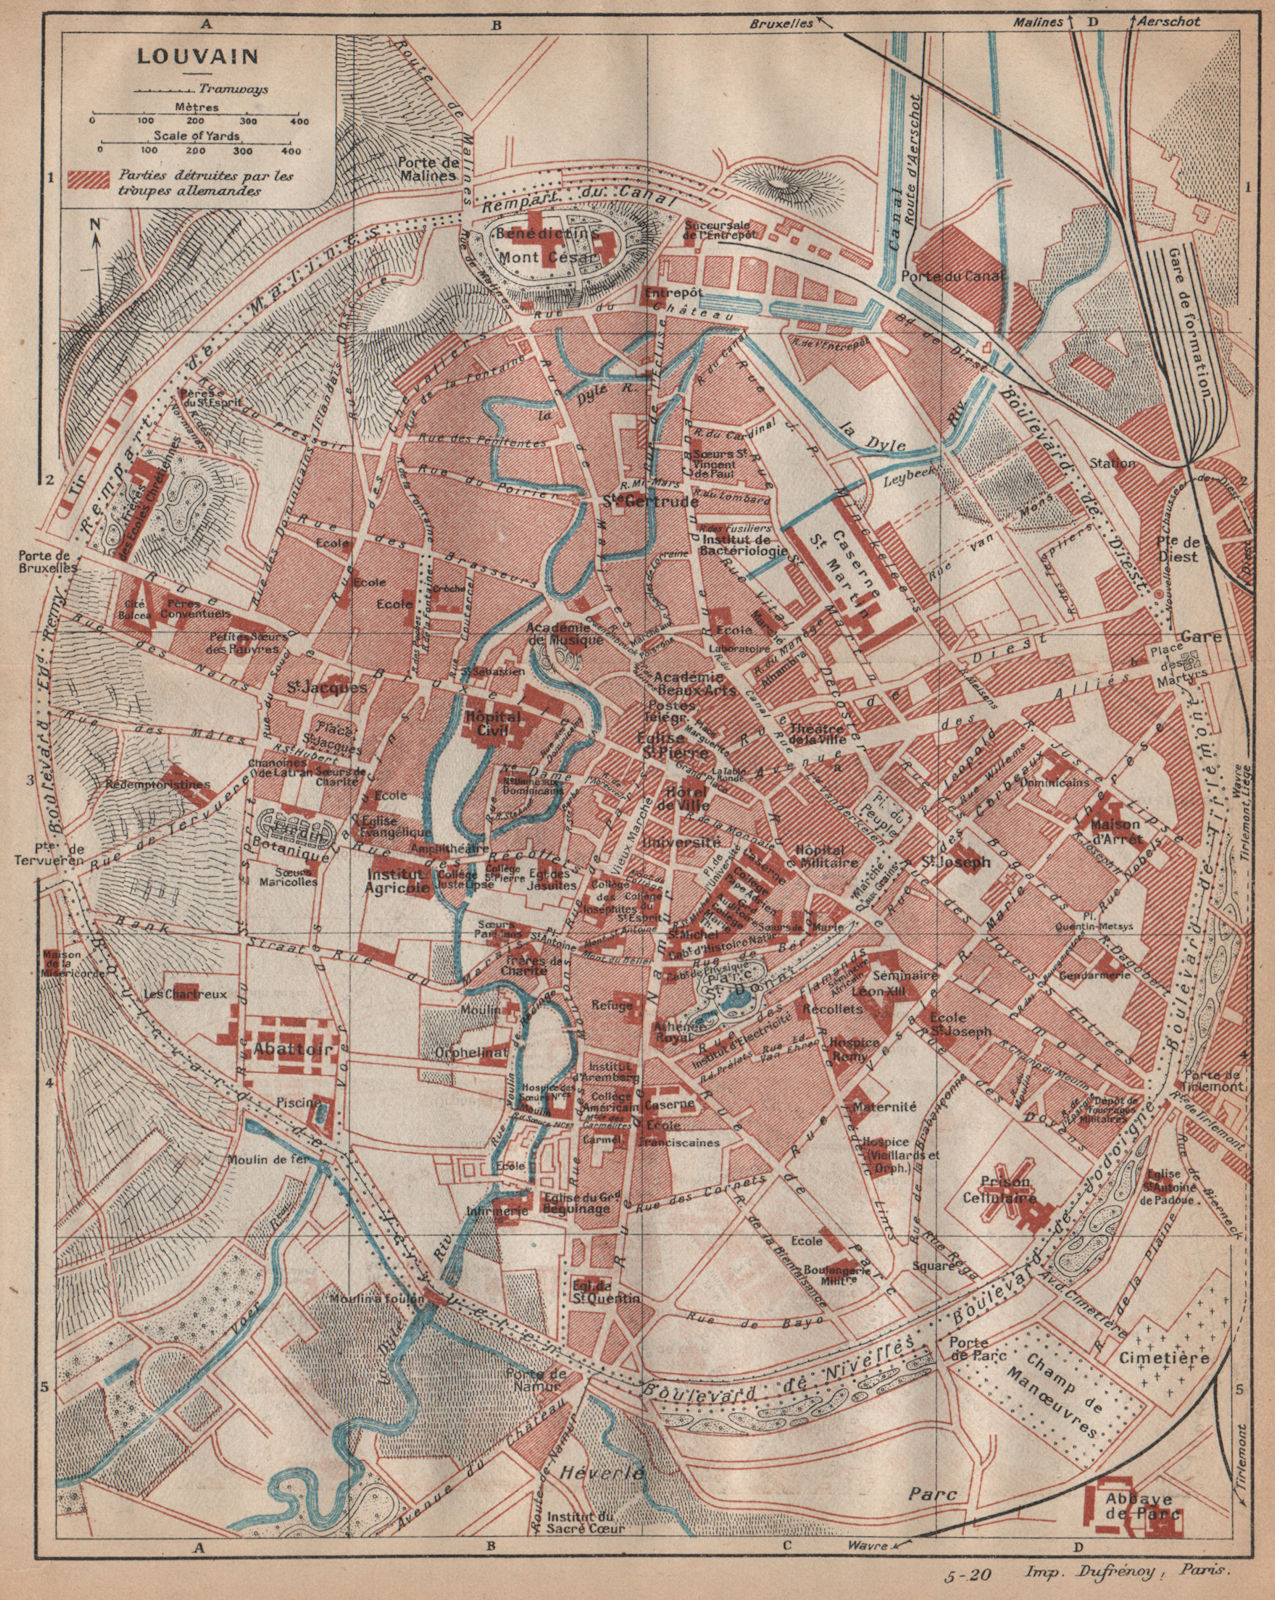 Associate Product LOUVAIN (LEUVEN) . Vintage town city map plan. Belgium 1920 old antique